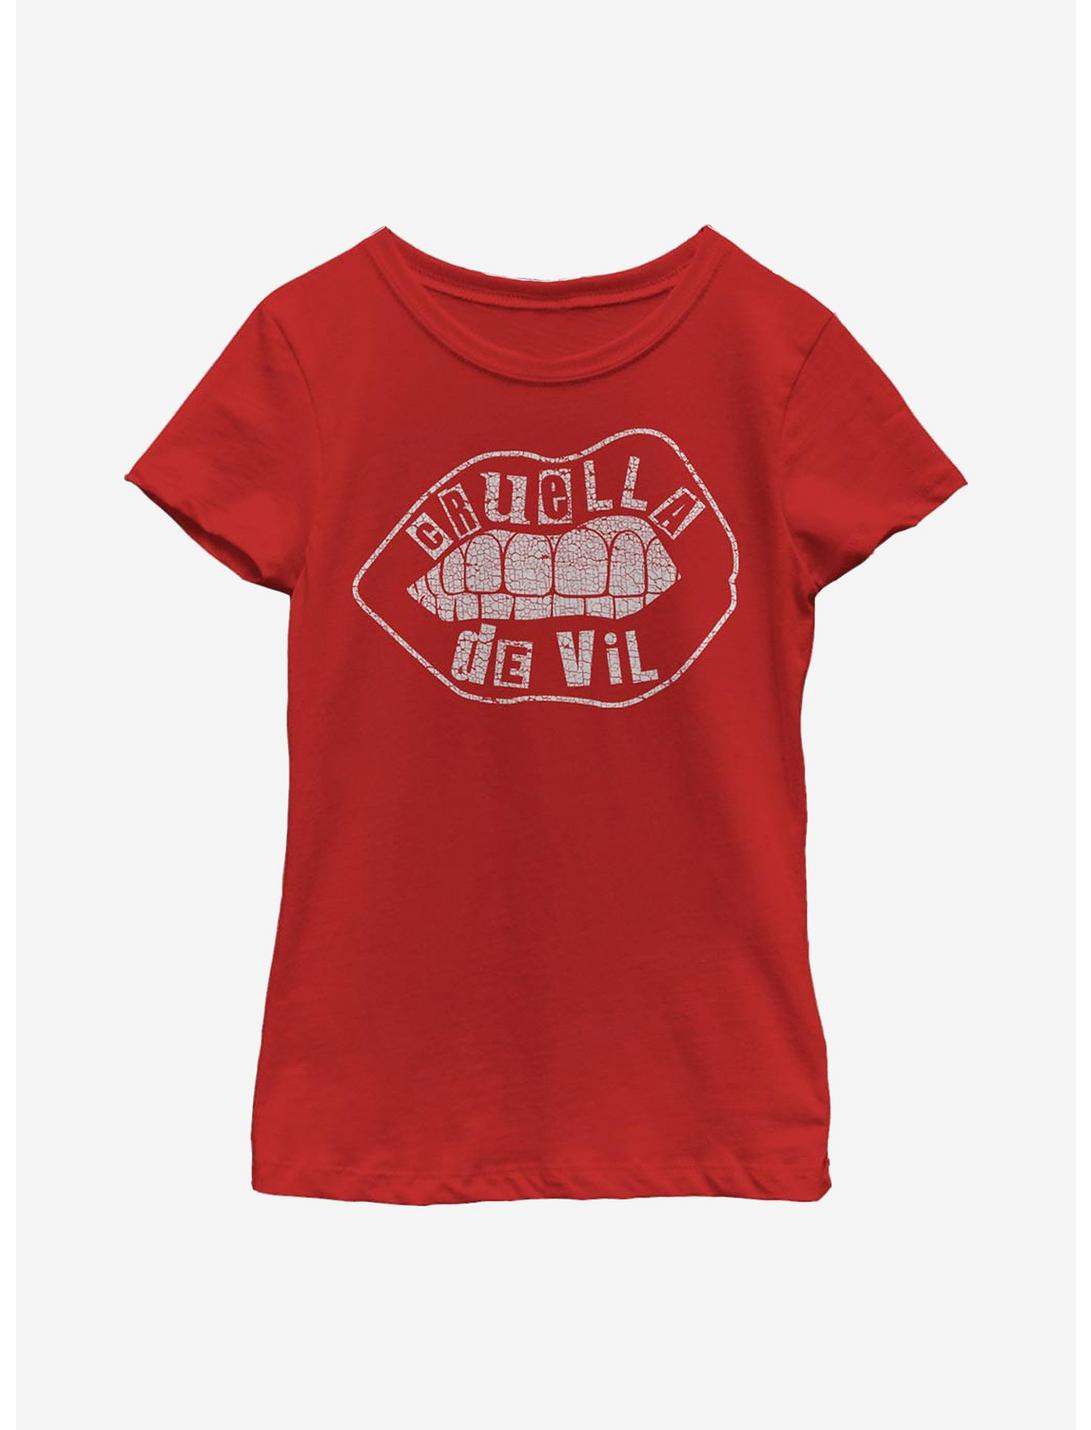 Disney Cruella De Vil Lip Design Youth Girls T-Shirt, RED, hi-res